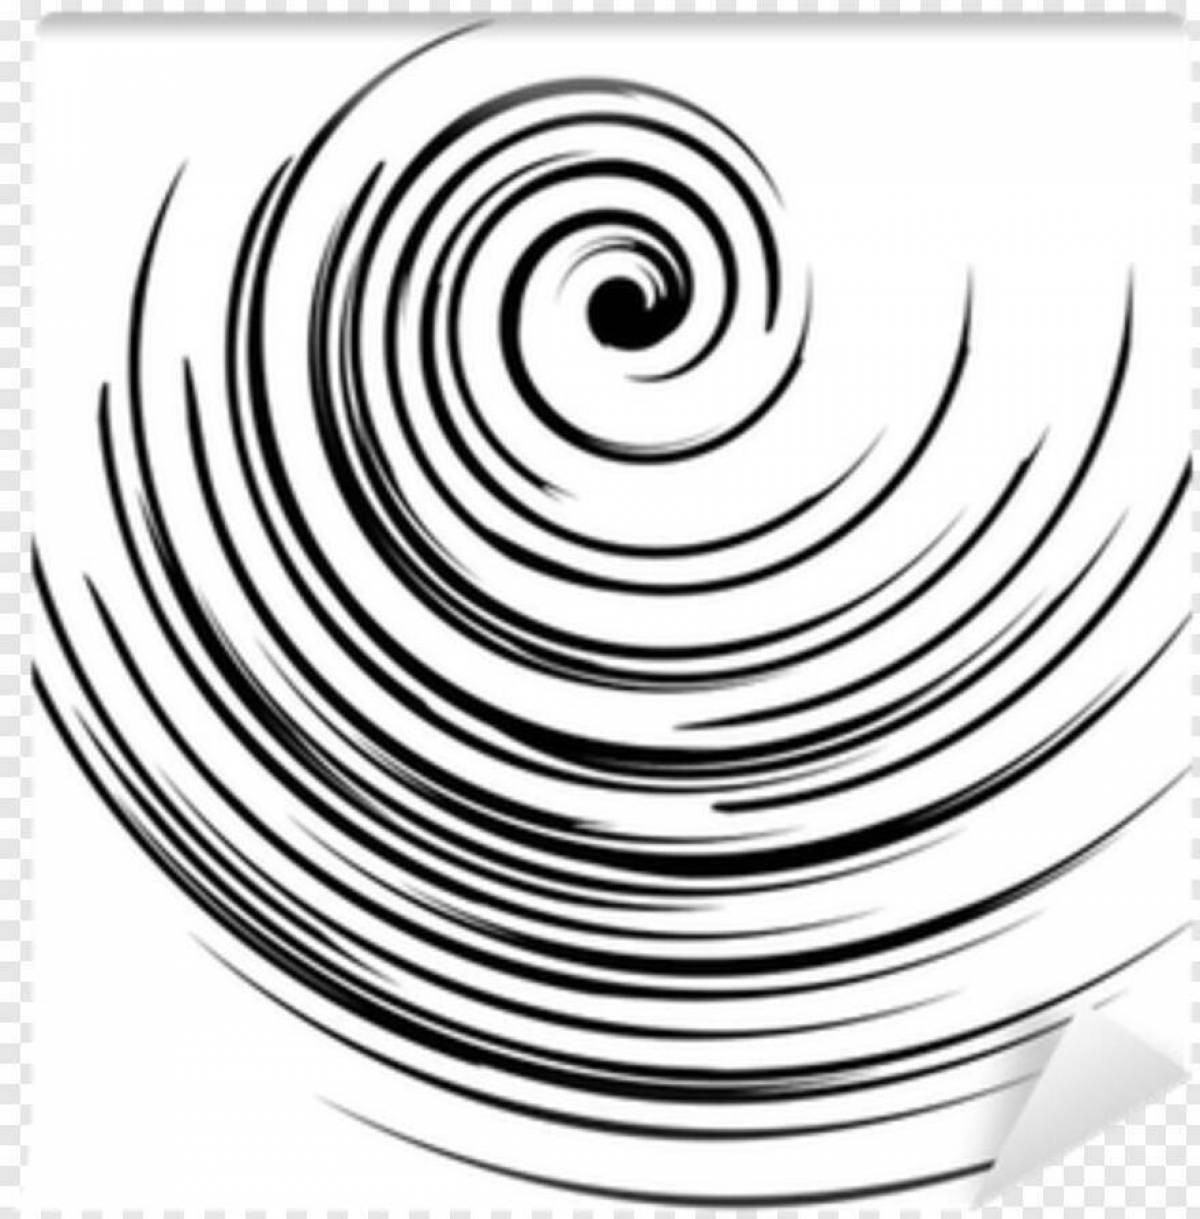 Elegant spiral coloring